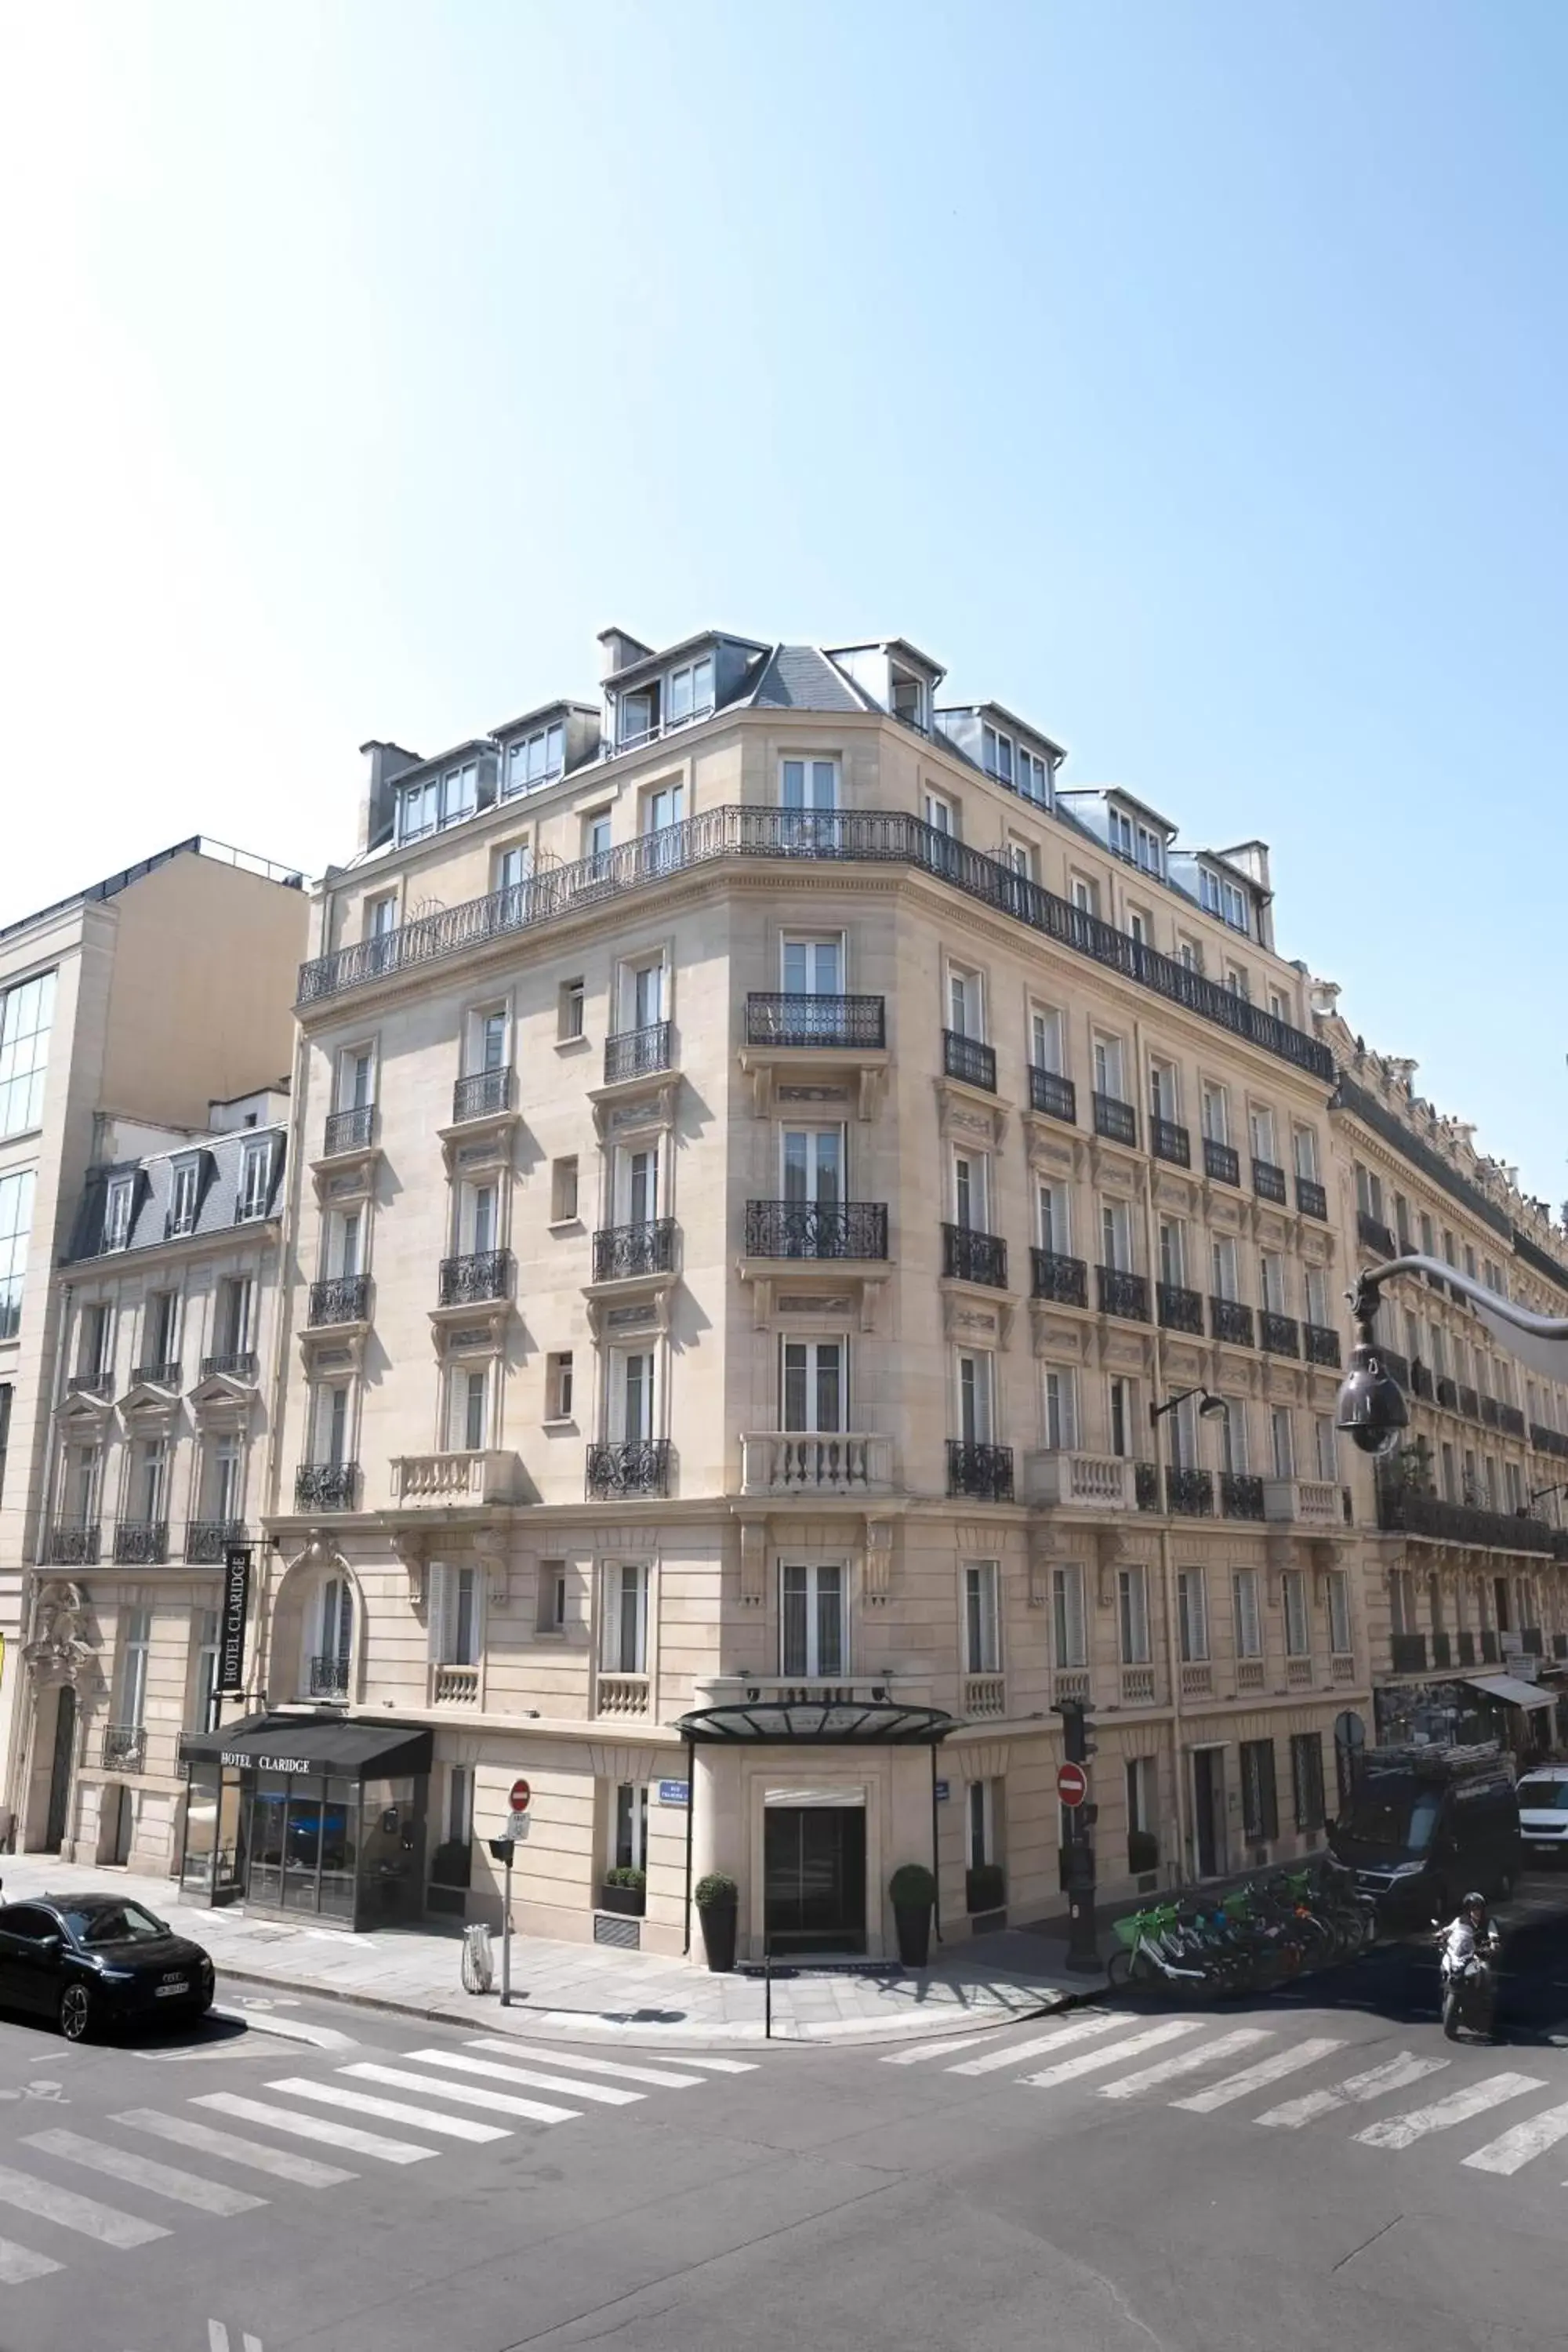 Facade/entrance, Property Building in Hotel Claridge Paris